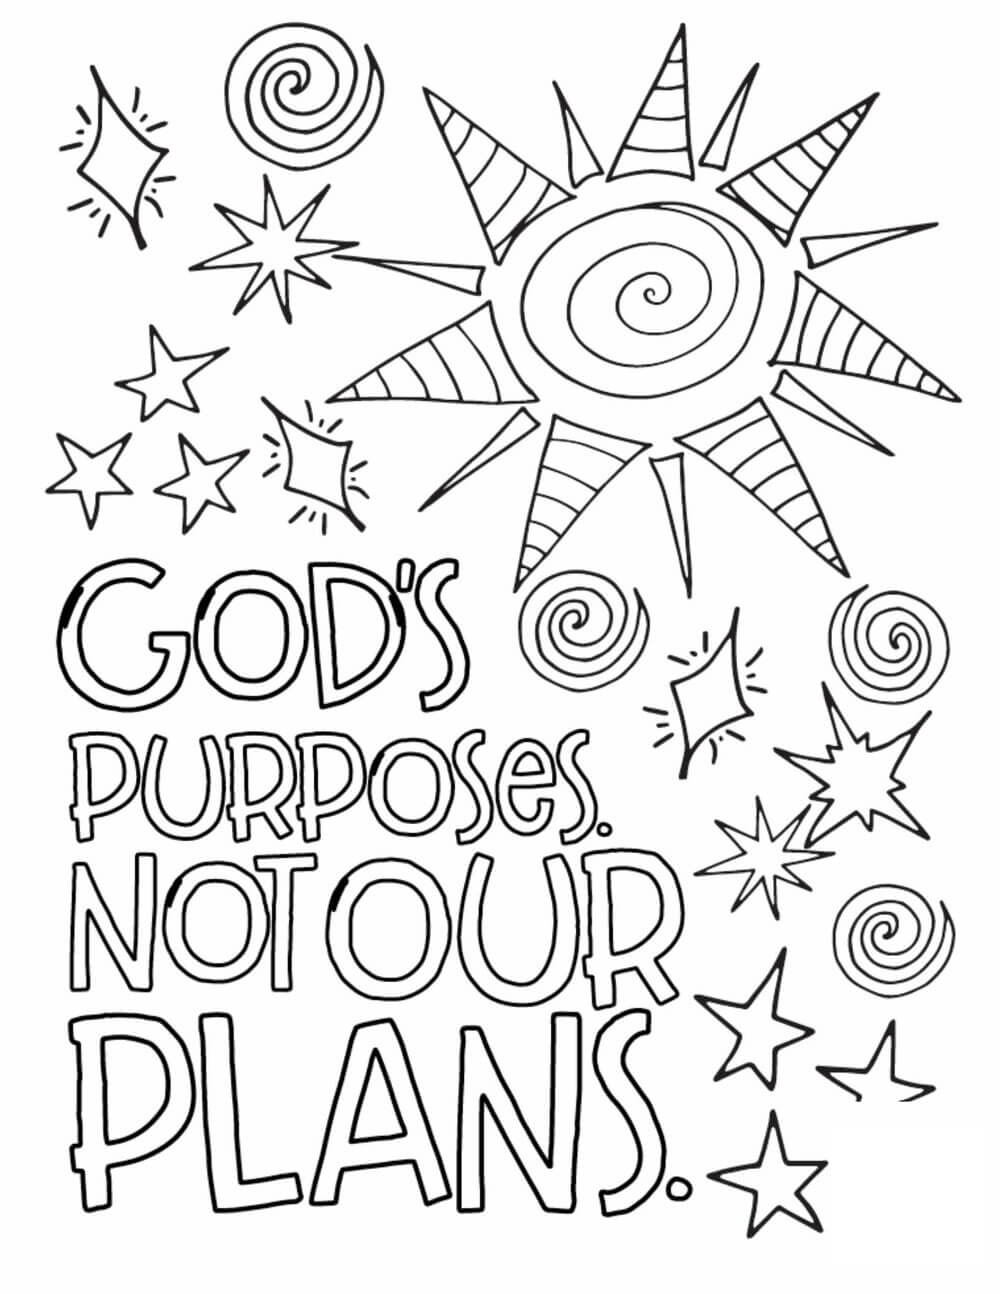 Los Propósitos de Dios no son Nuestros Planes